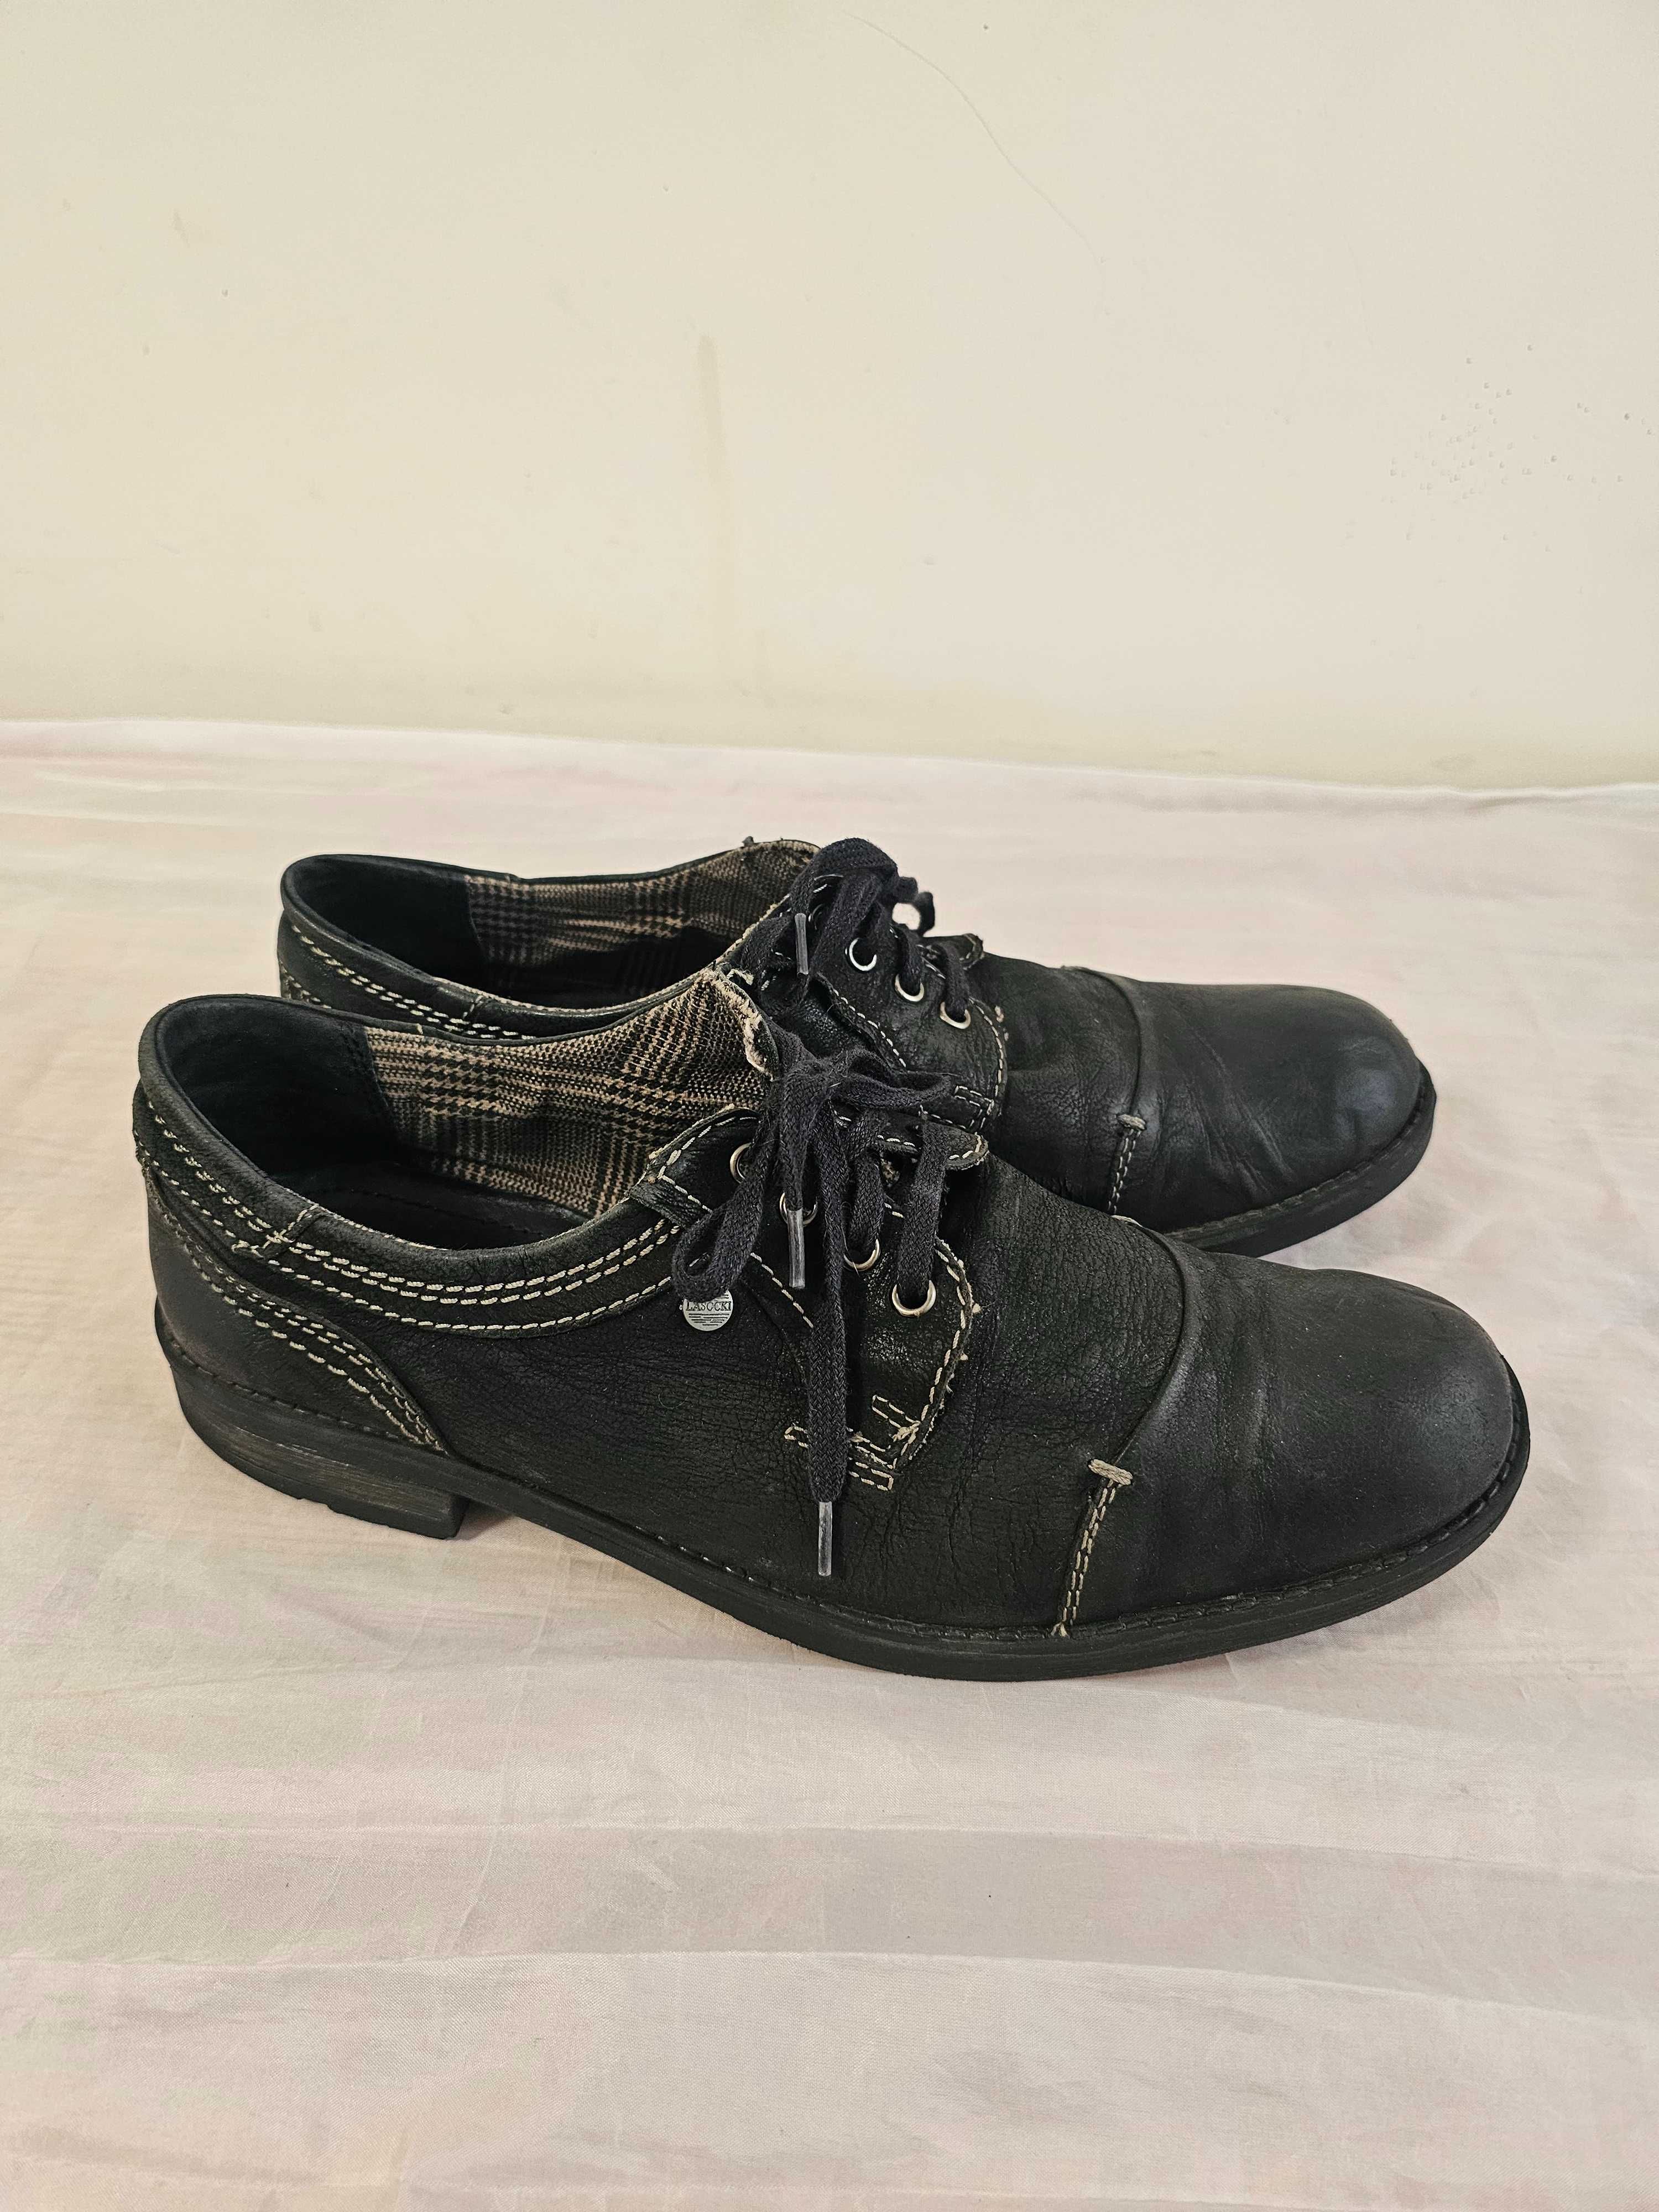 Buty skórzane Lasocki r. 43 , wkładka 28,5 cm